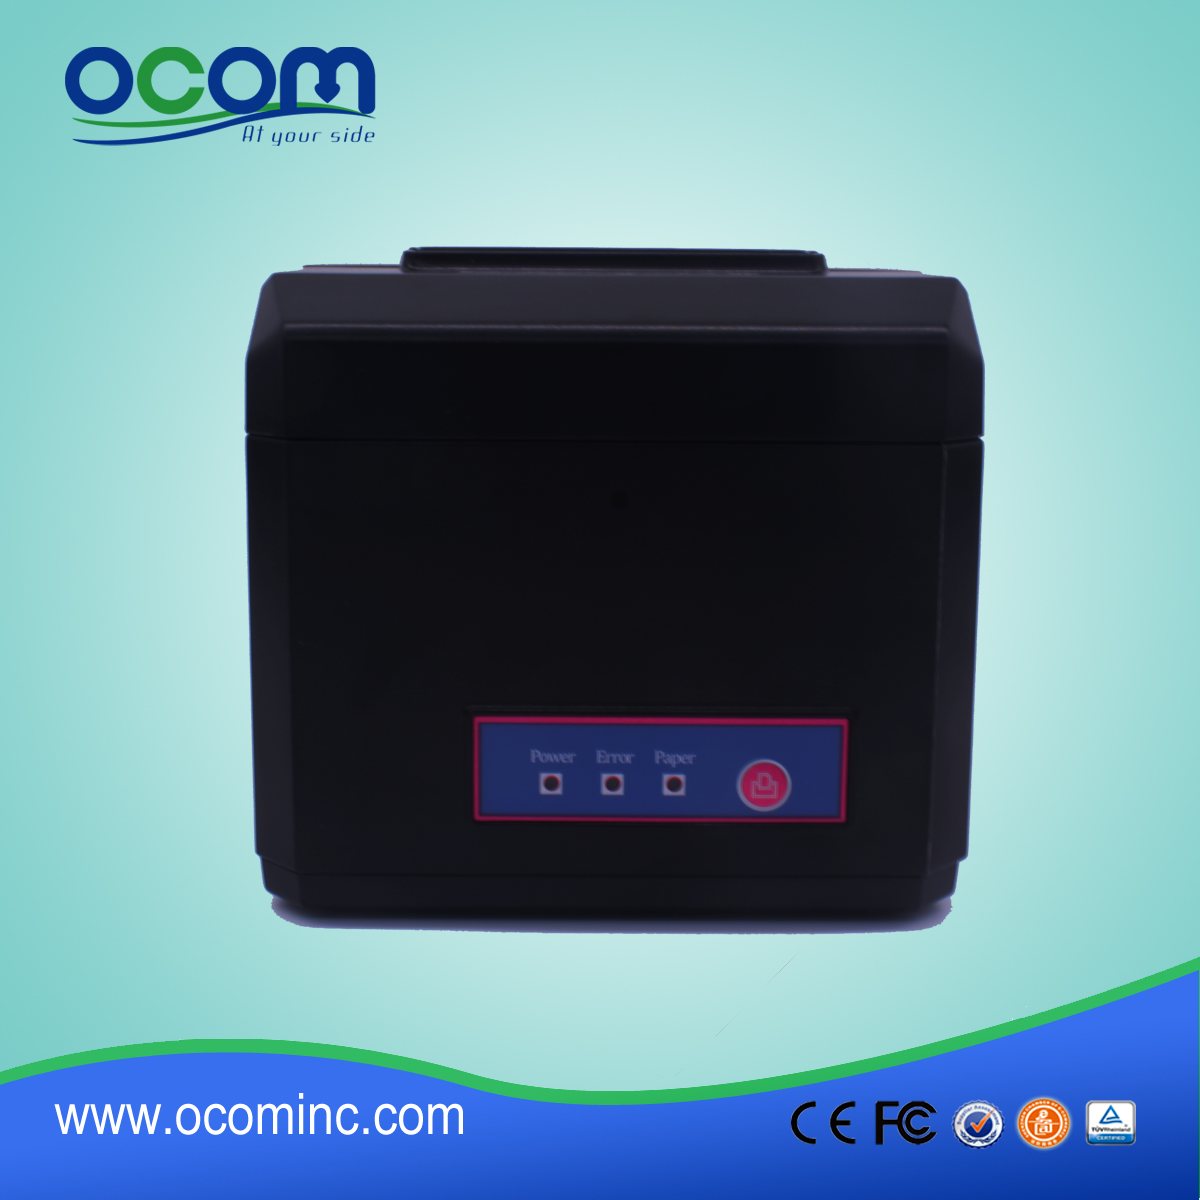 OCPP-80F-UB Stampante termica per ricevute ad alta velocità economica 80MM con interfaccia ad alta velocità USB + Bluetooth